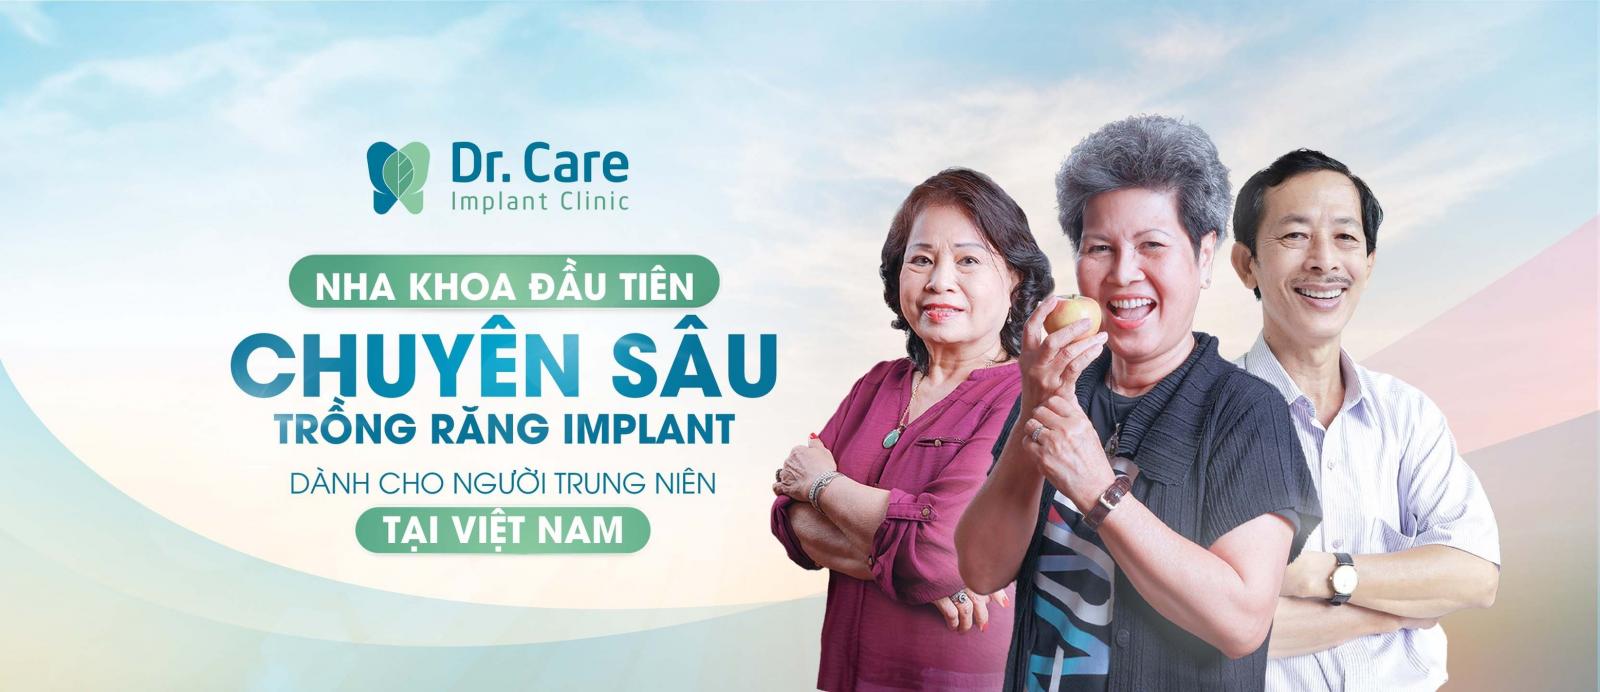 Dr. Care Implant Clinic - Địa chỉ trồng răng Implant uy tín tại TP. HCM